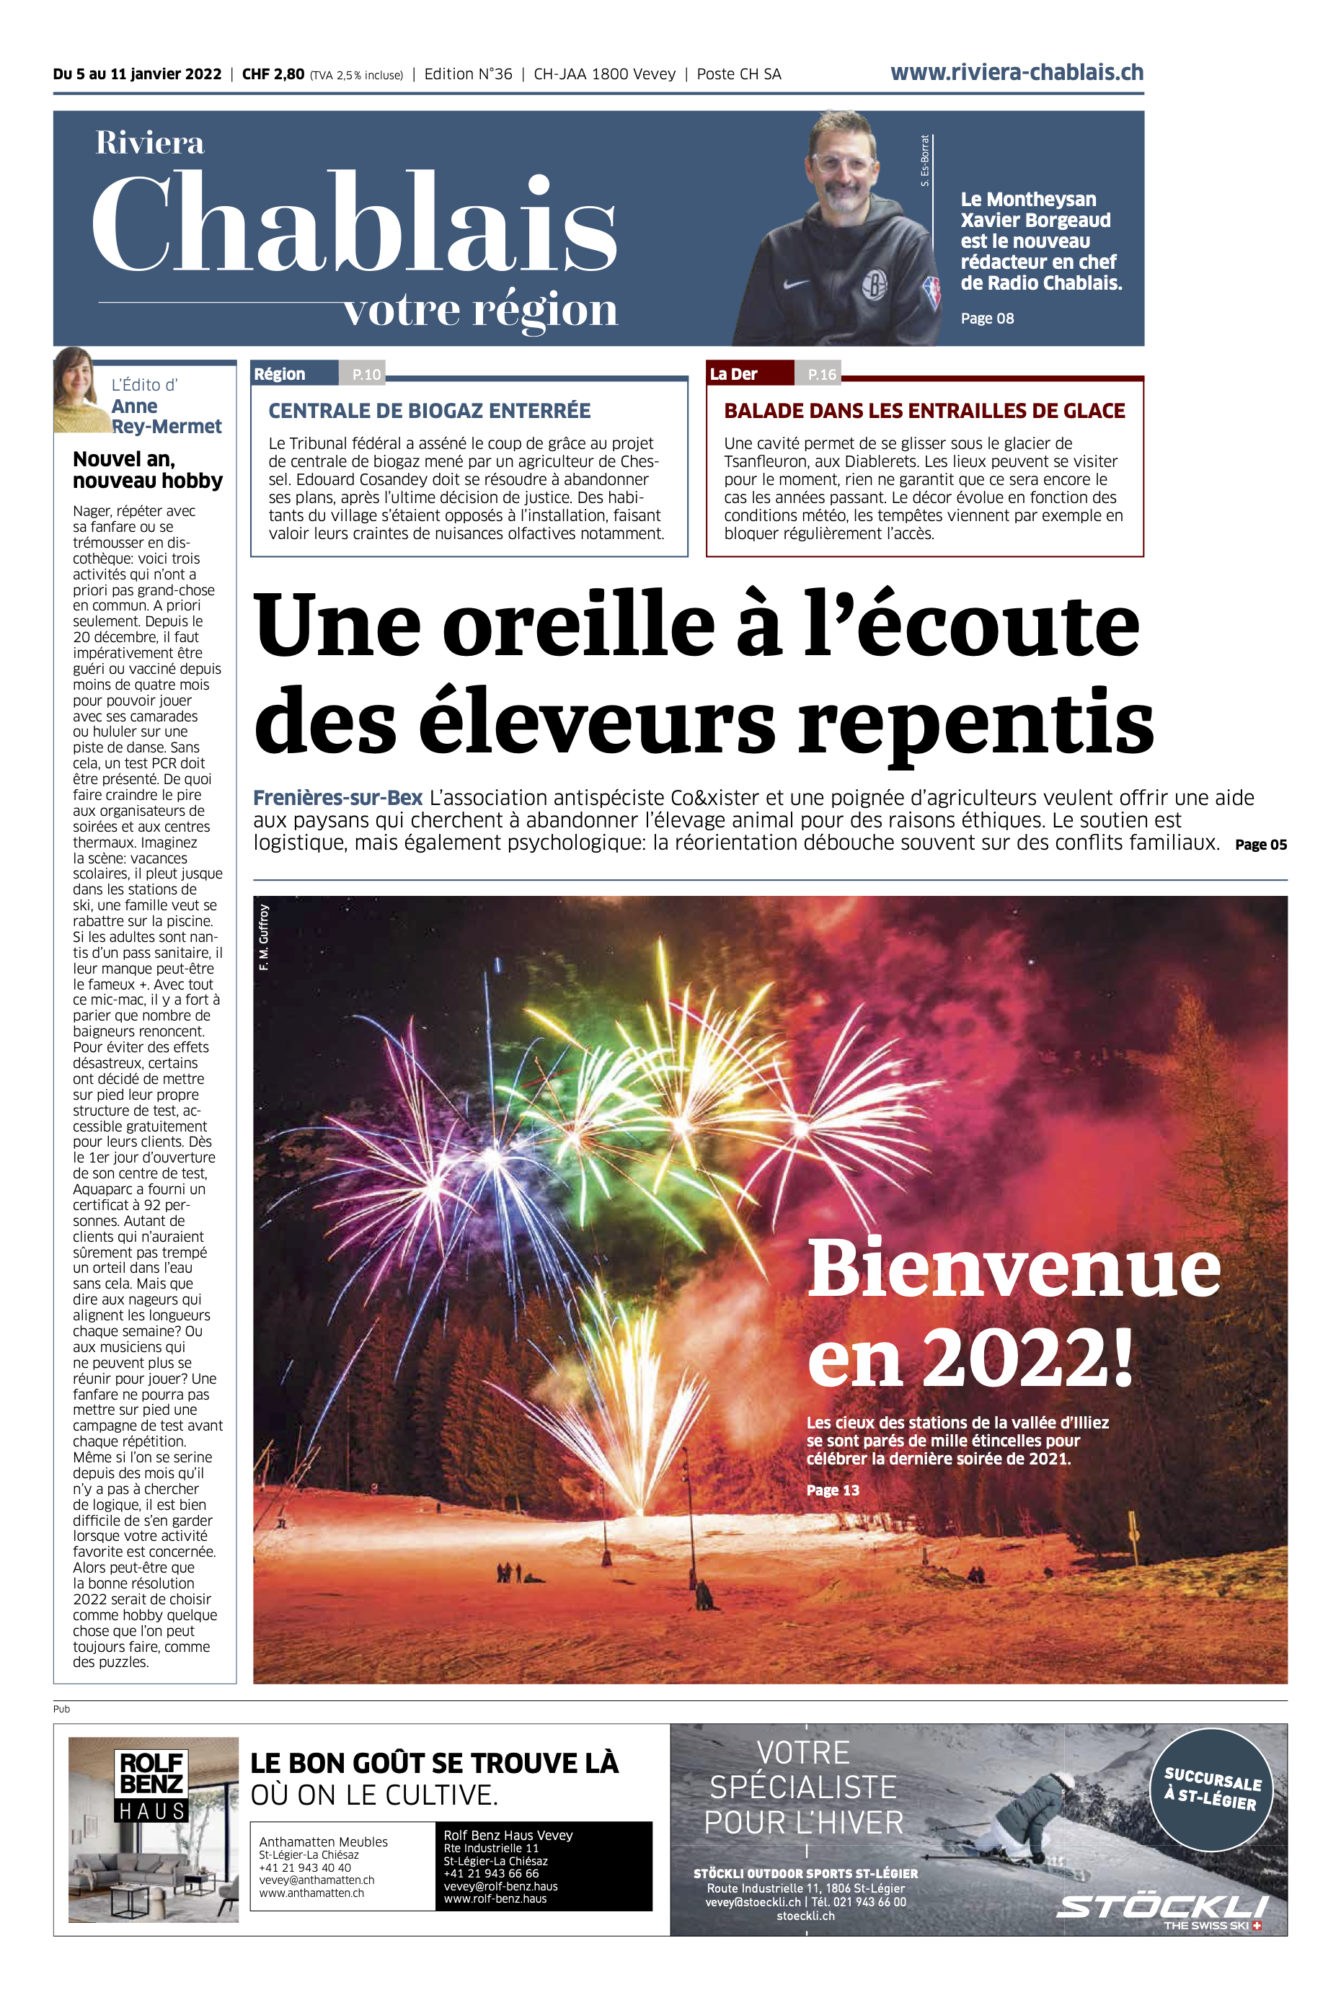 Journal Chablais n°36 ©Dessin de Gilles,, pour l'Article 2G+ dans les aquaparcs et bains thermaux du 5 janvier 2022 page 1